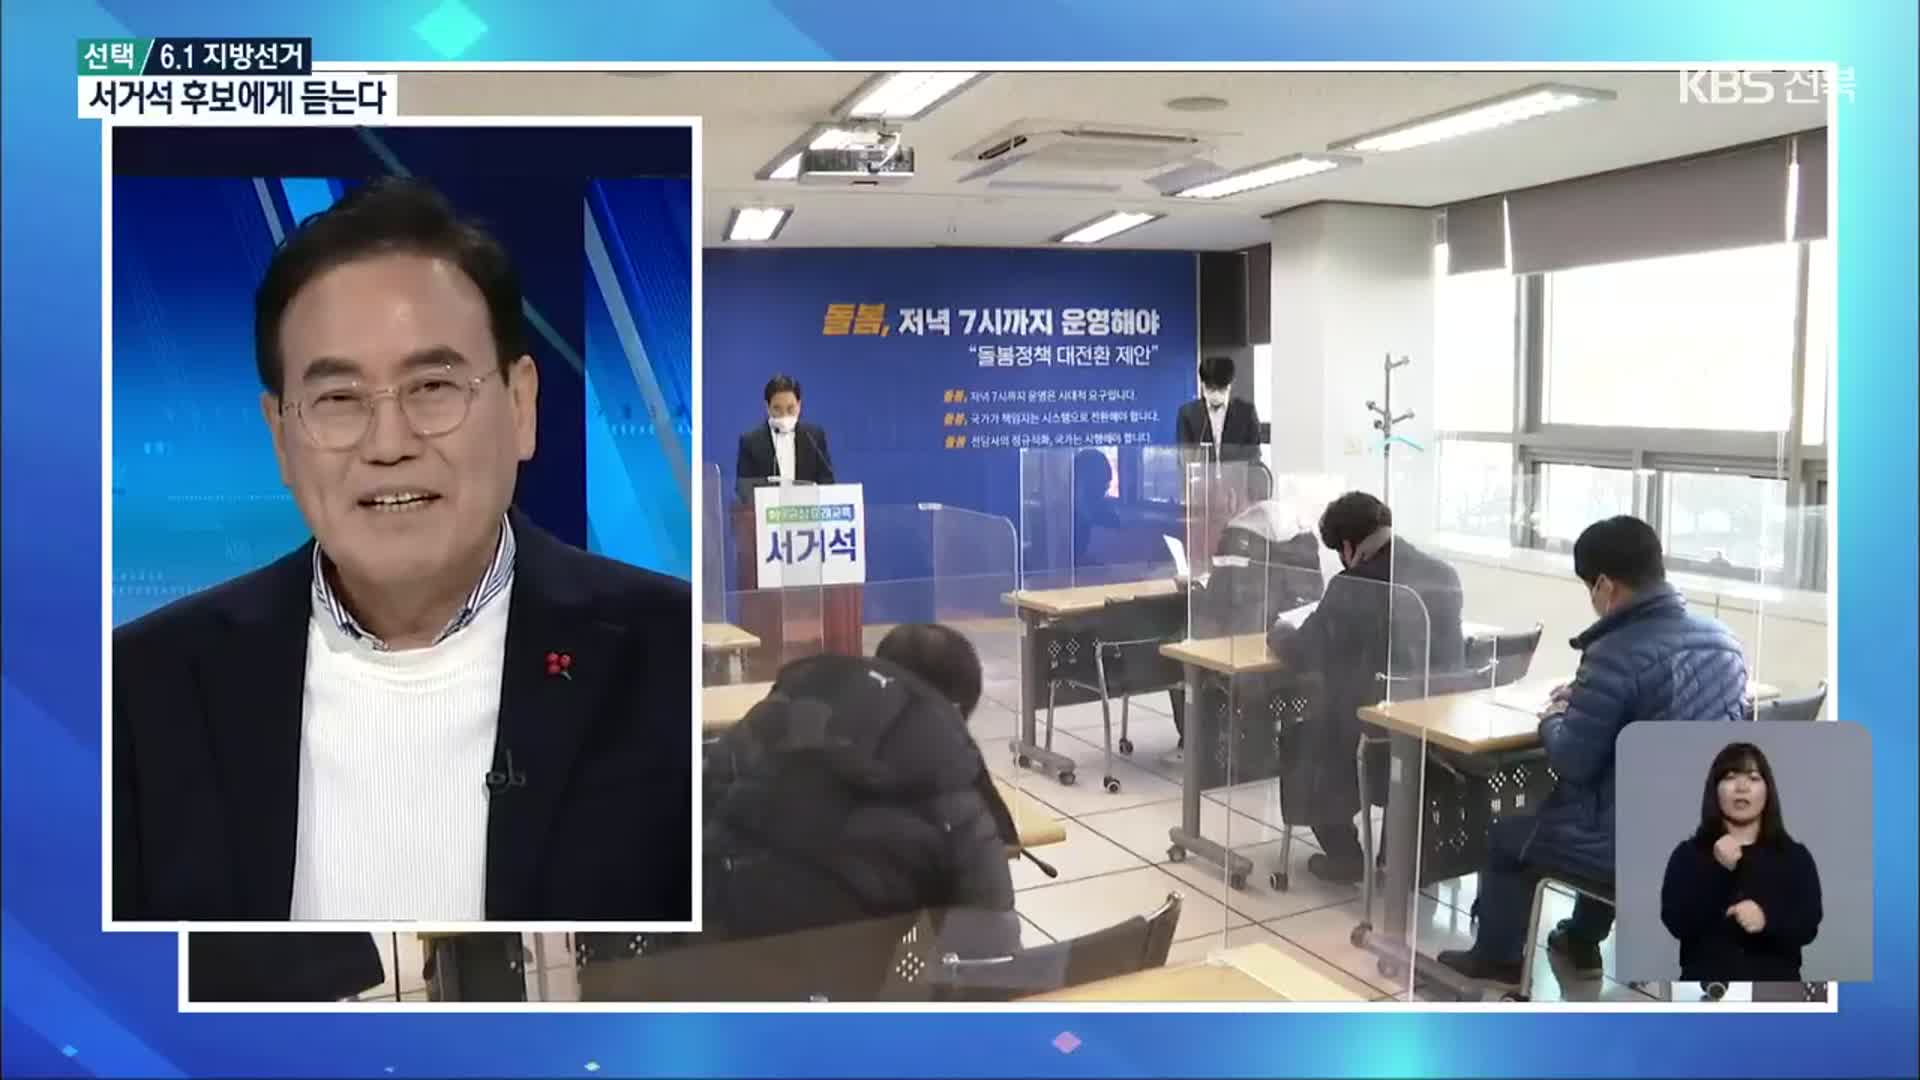 [선택 6.1 지방선거] 서거석 전북교육감 후보에게 듣는다